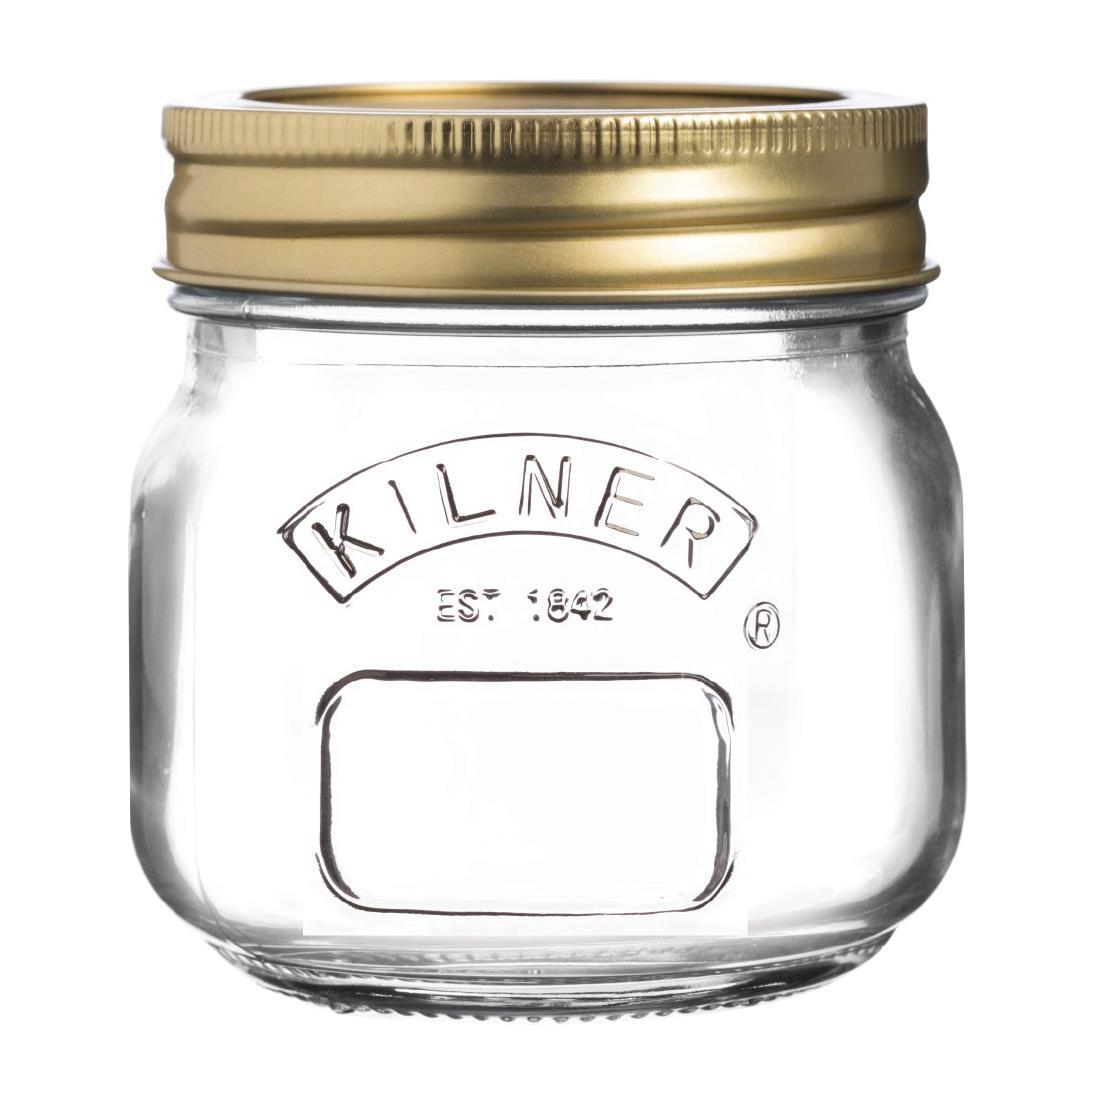 Kilner Screw Top Preserve Jar 250ml - GG784  - 1